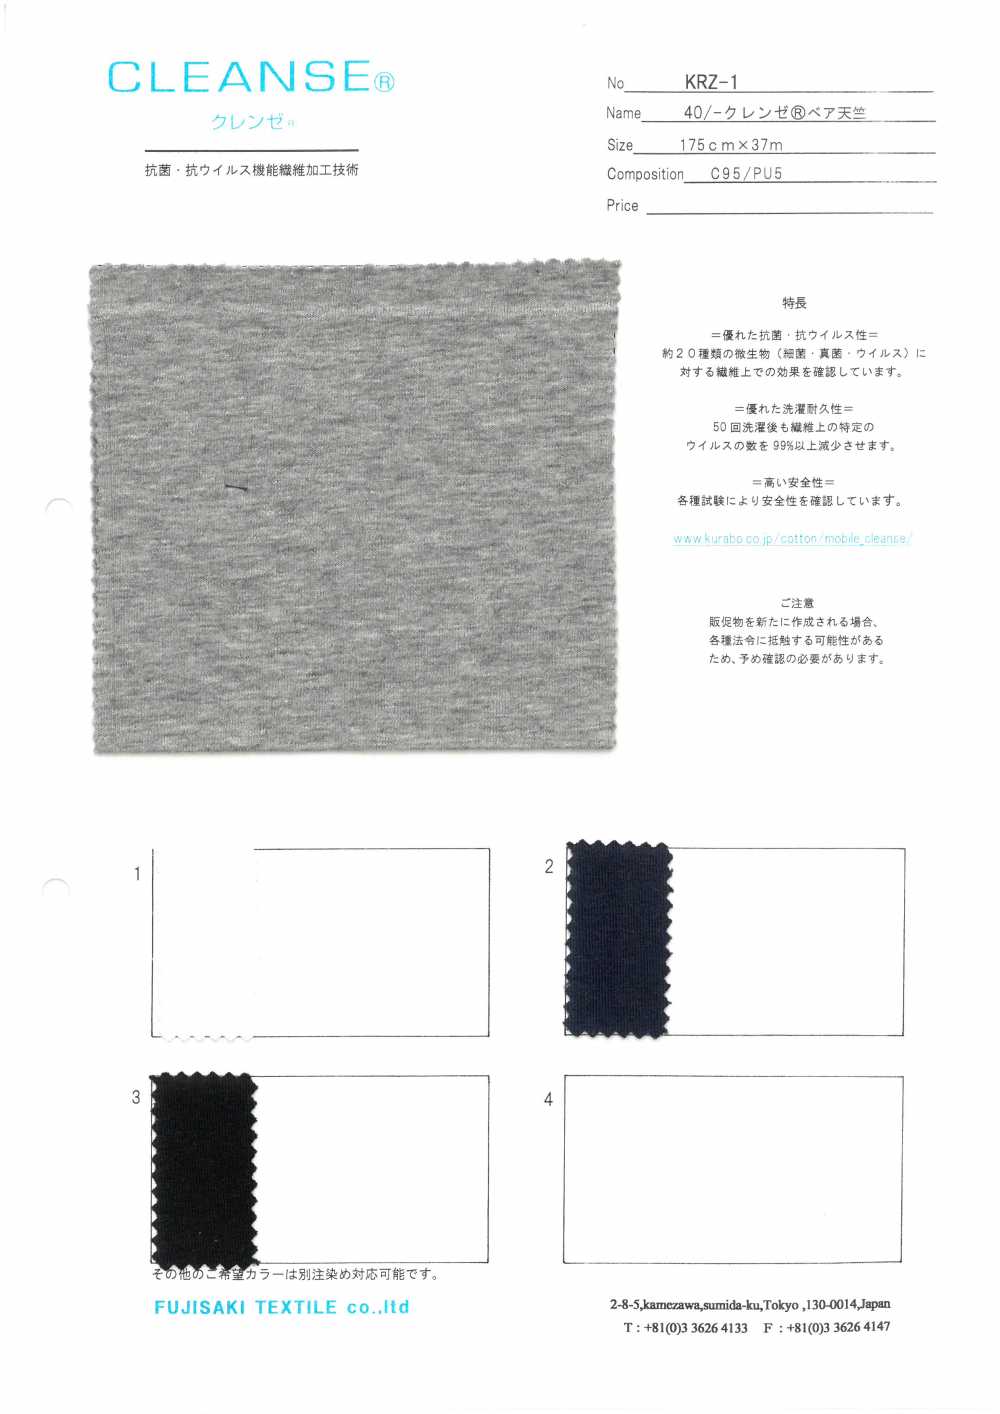 KRZ-1 40/- CLEANSE&#174;베어 싱글 다이마루[원단] Fujisaki Textile